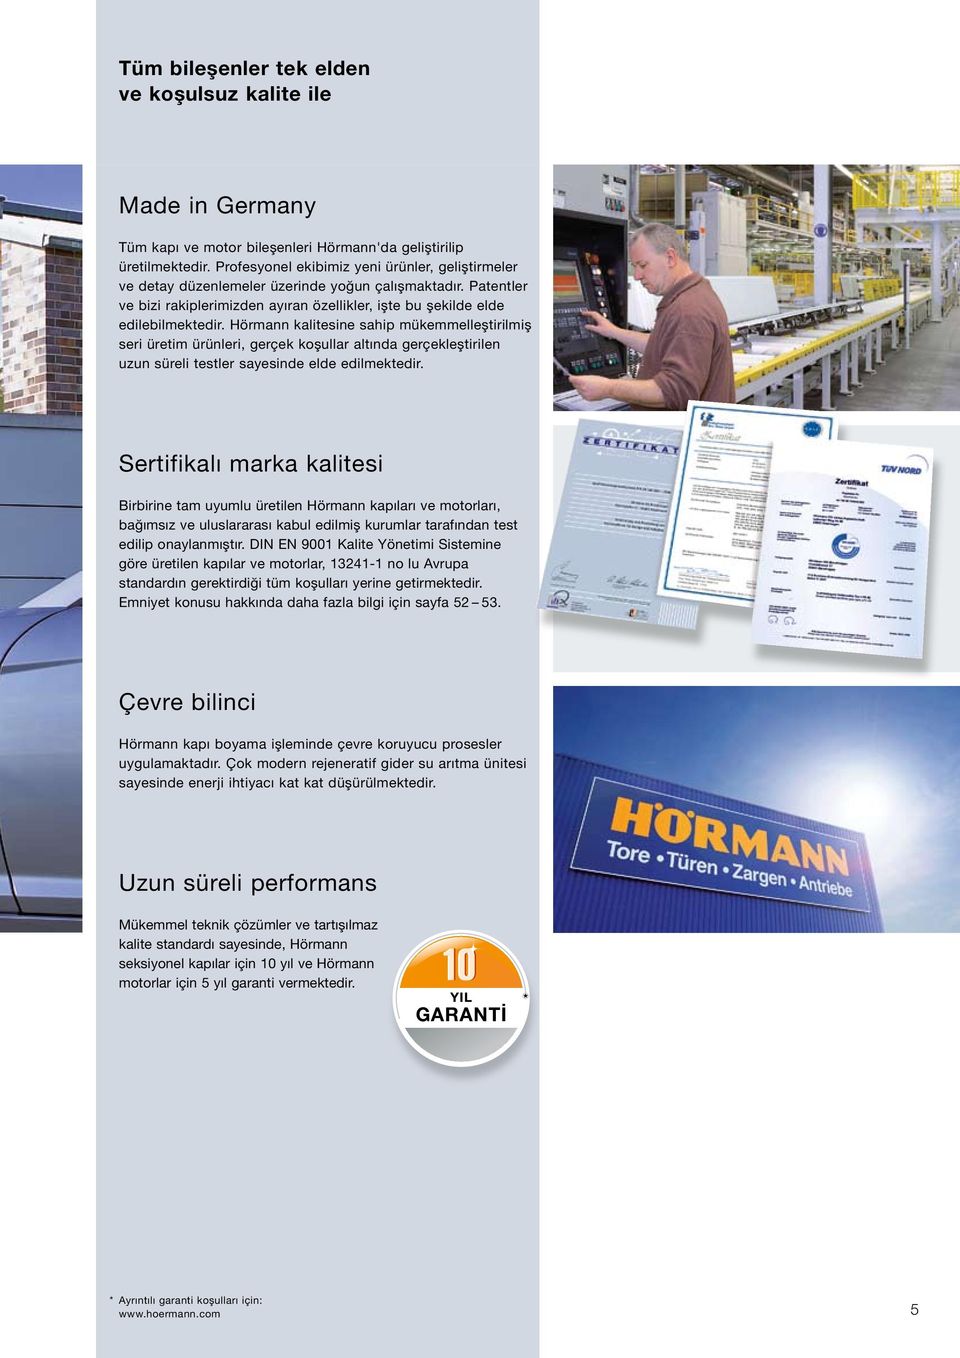 Hörmann kalitesine sahip mükemmelleştirilmiş seri üretim ürünleri, gerçek koşullar altında gerçekleştirilen uzun süreli testler sayesinde elde edilmektedir.